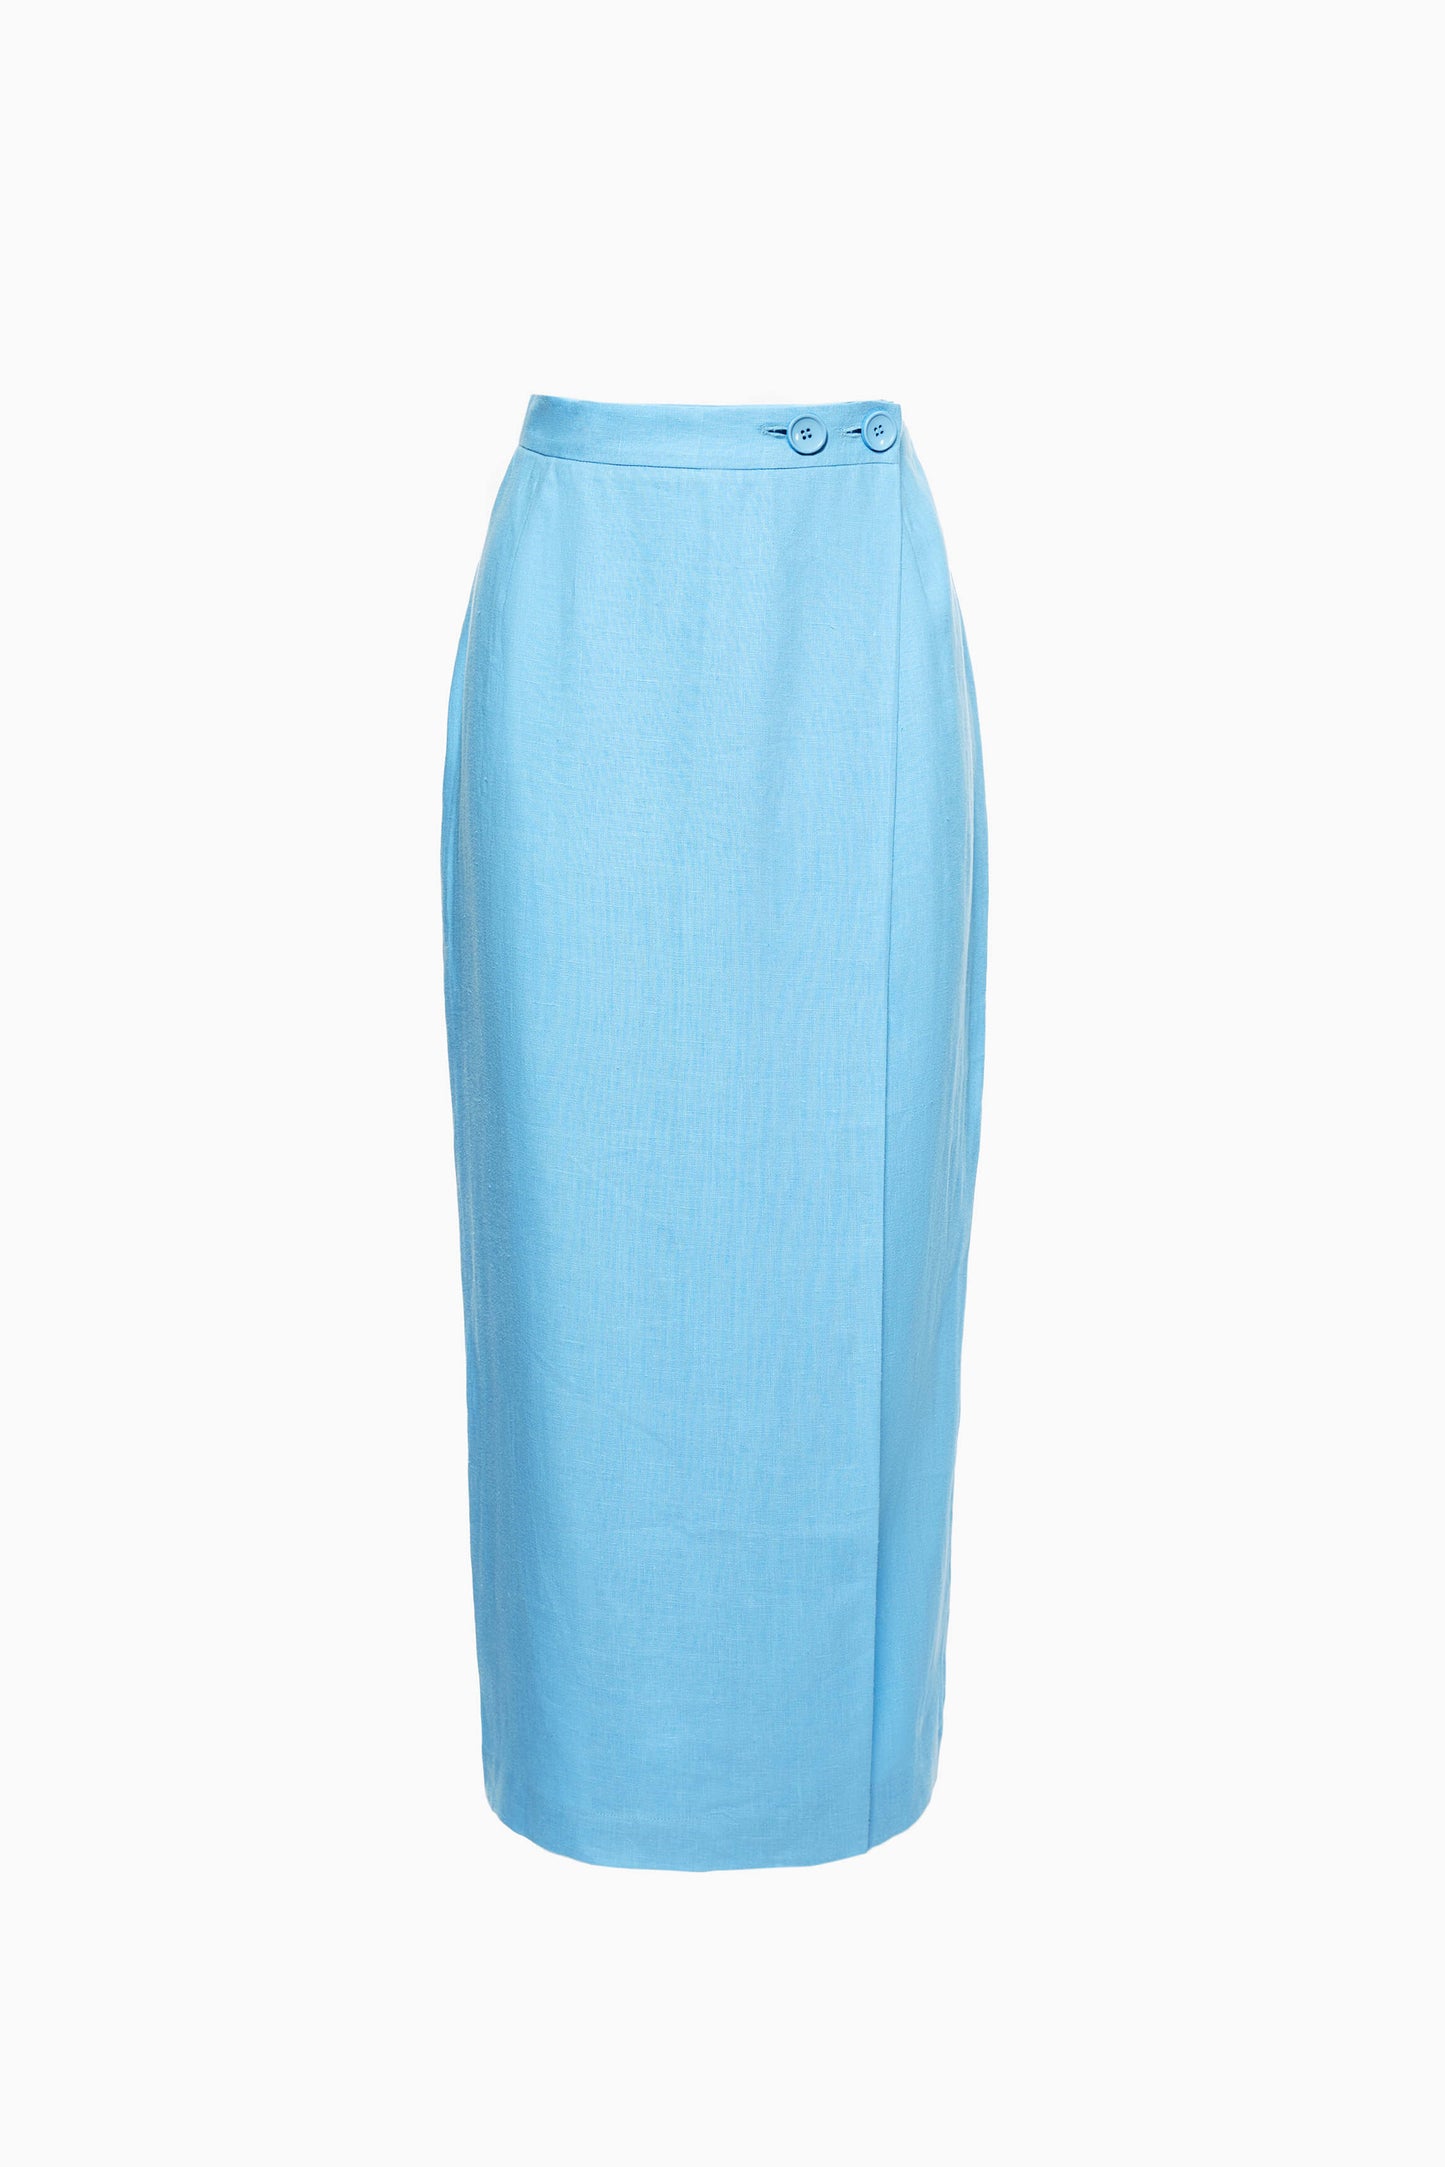 Lili Marleen Skirt in Blue